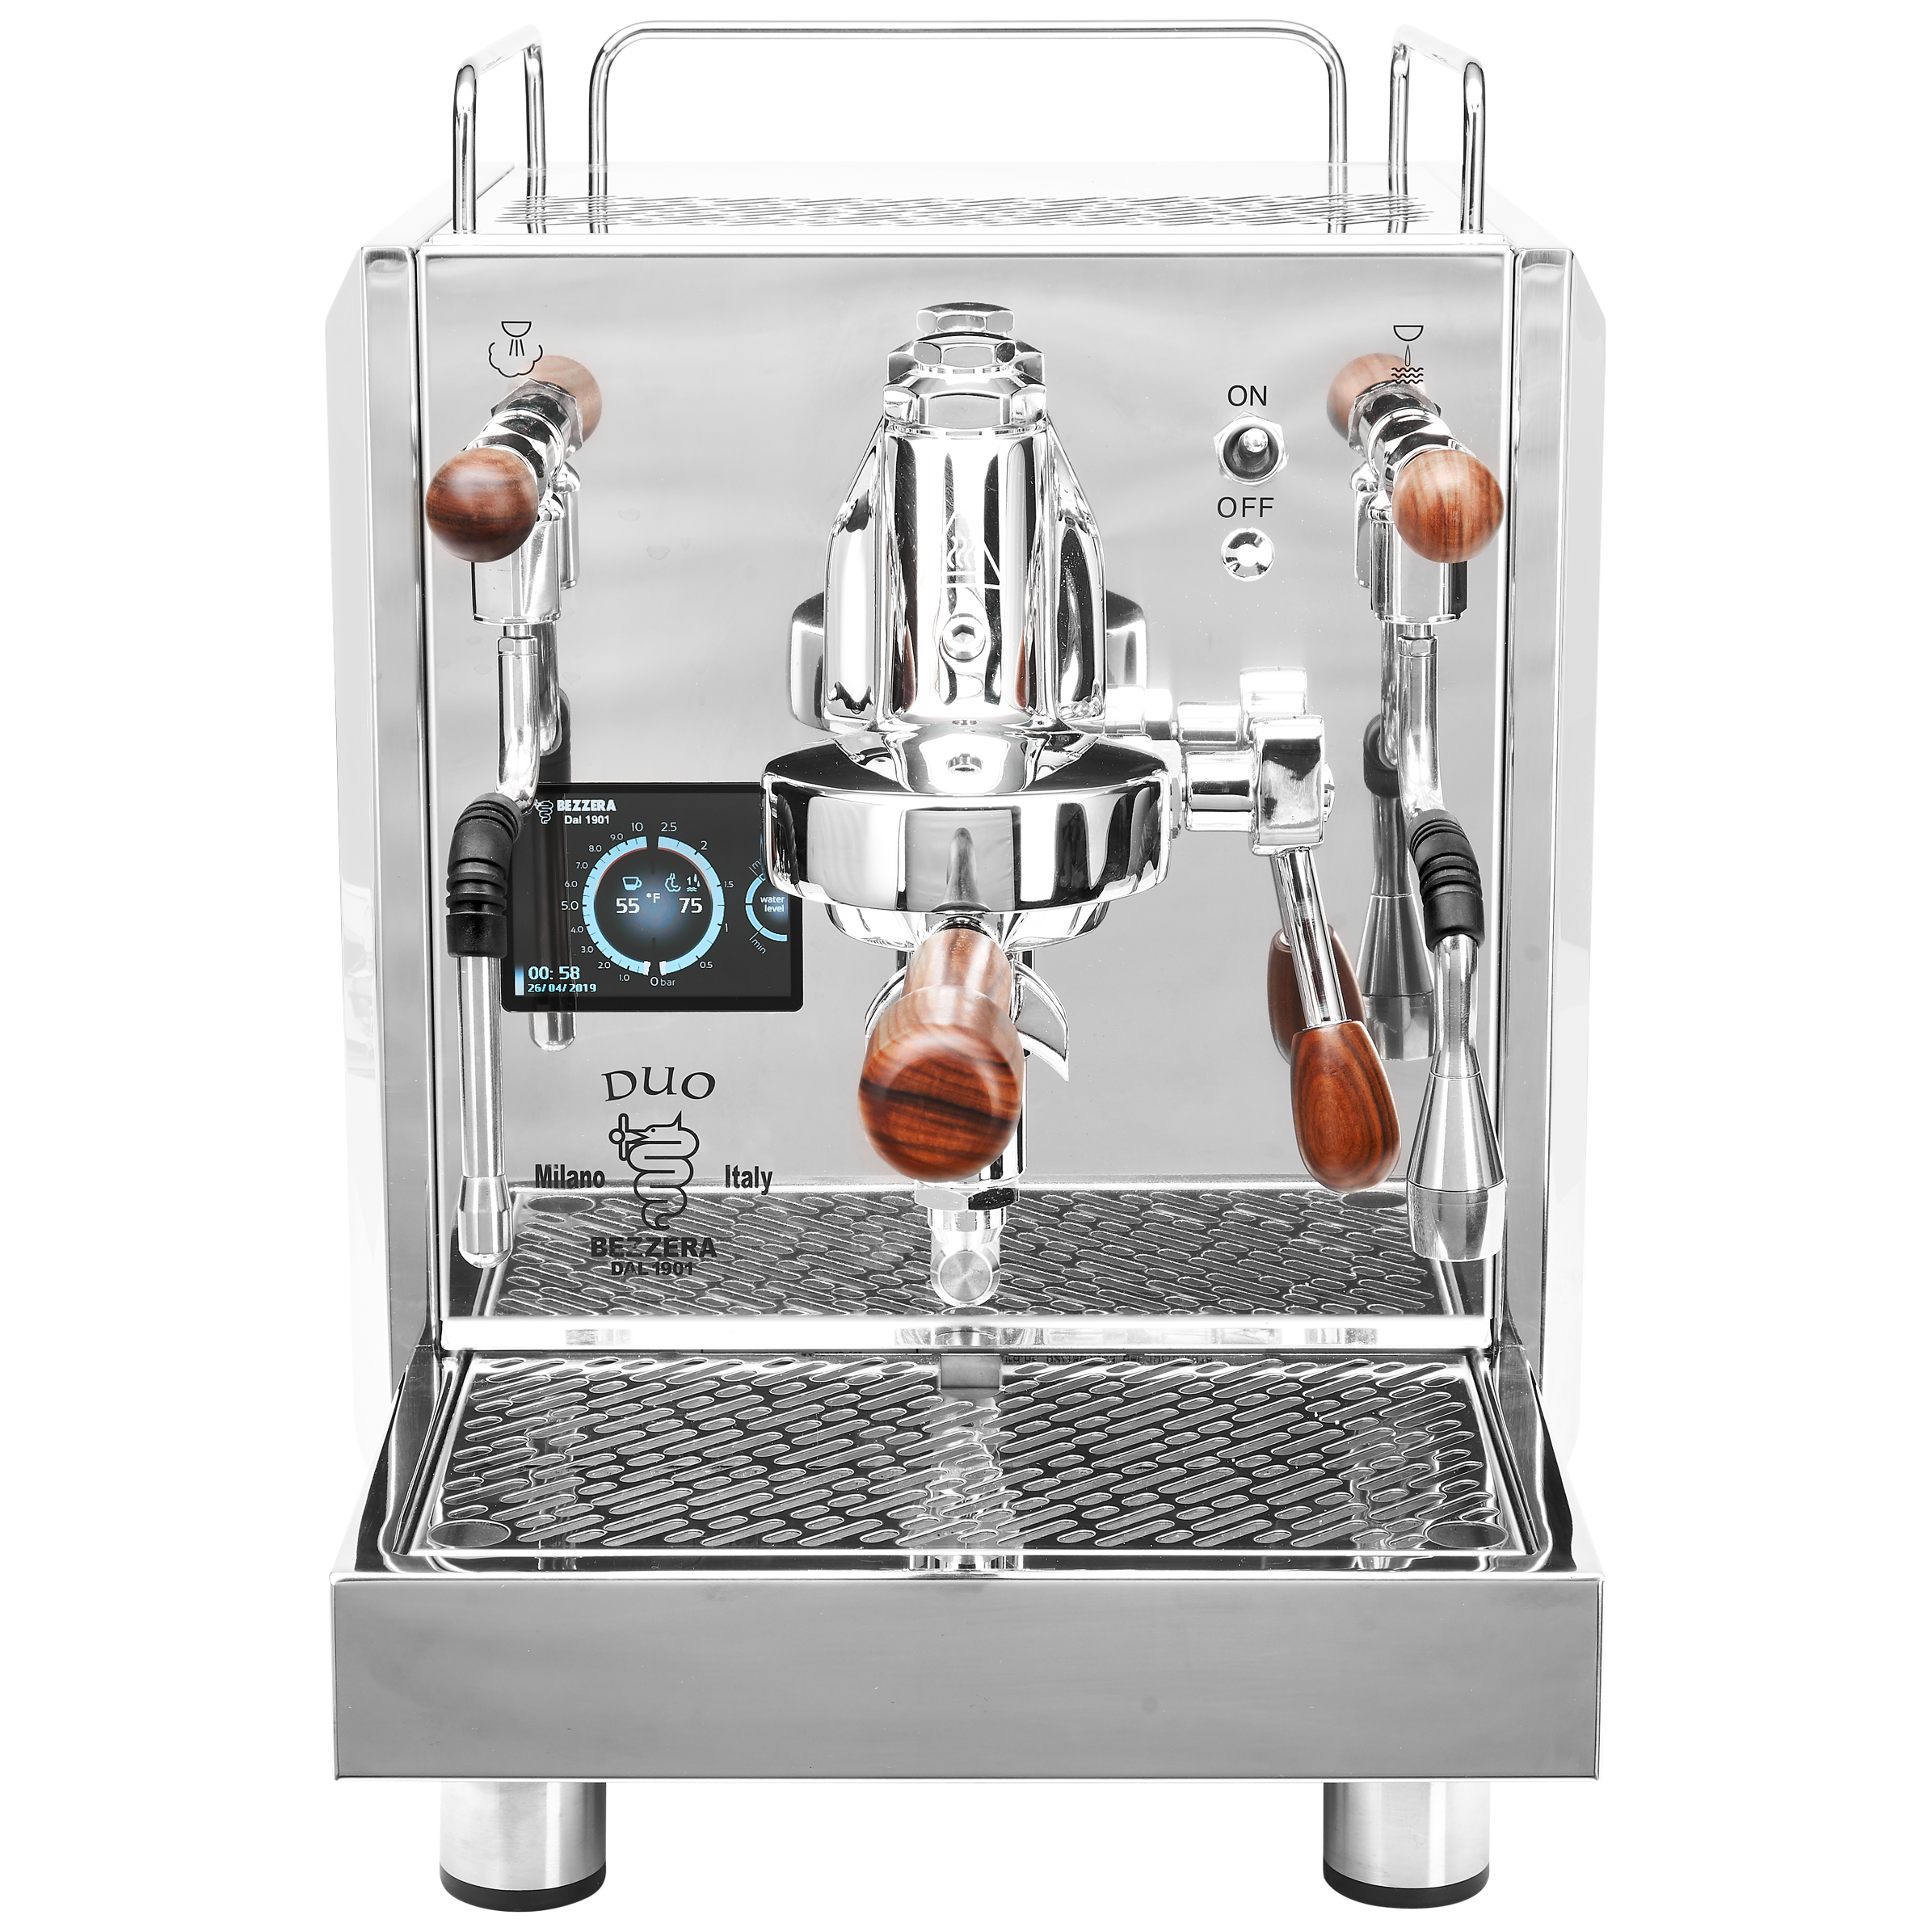 The Bezzera DUO MN Dual Boiler Espresso Machine – Whole Latte Love